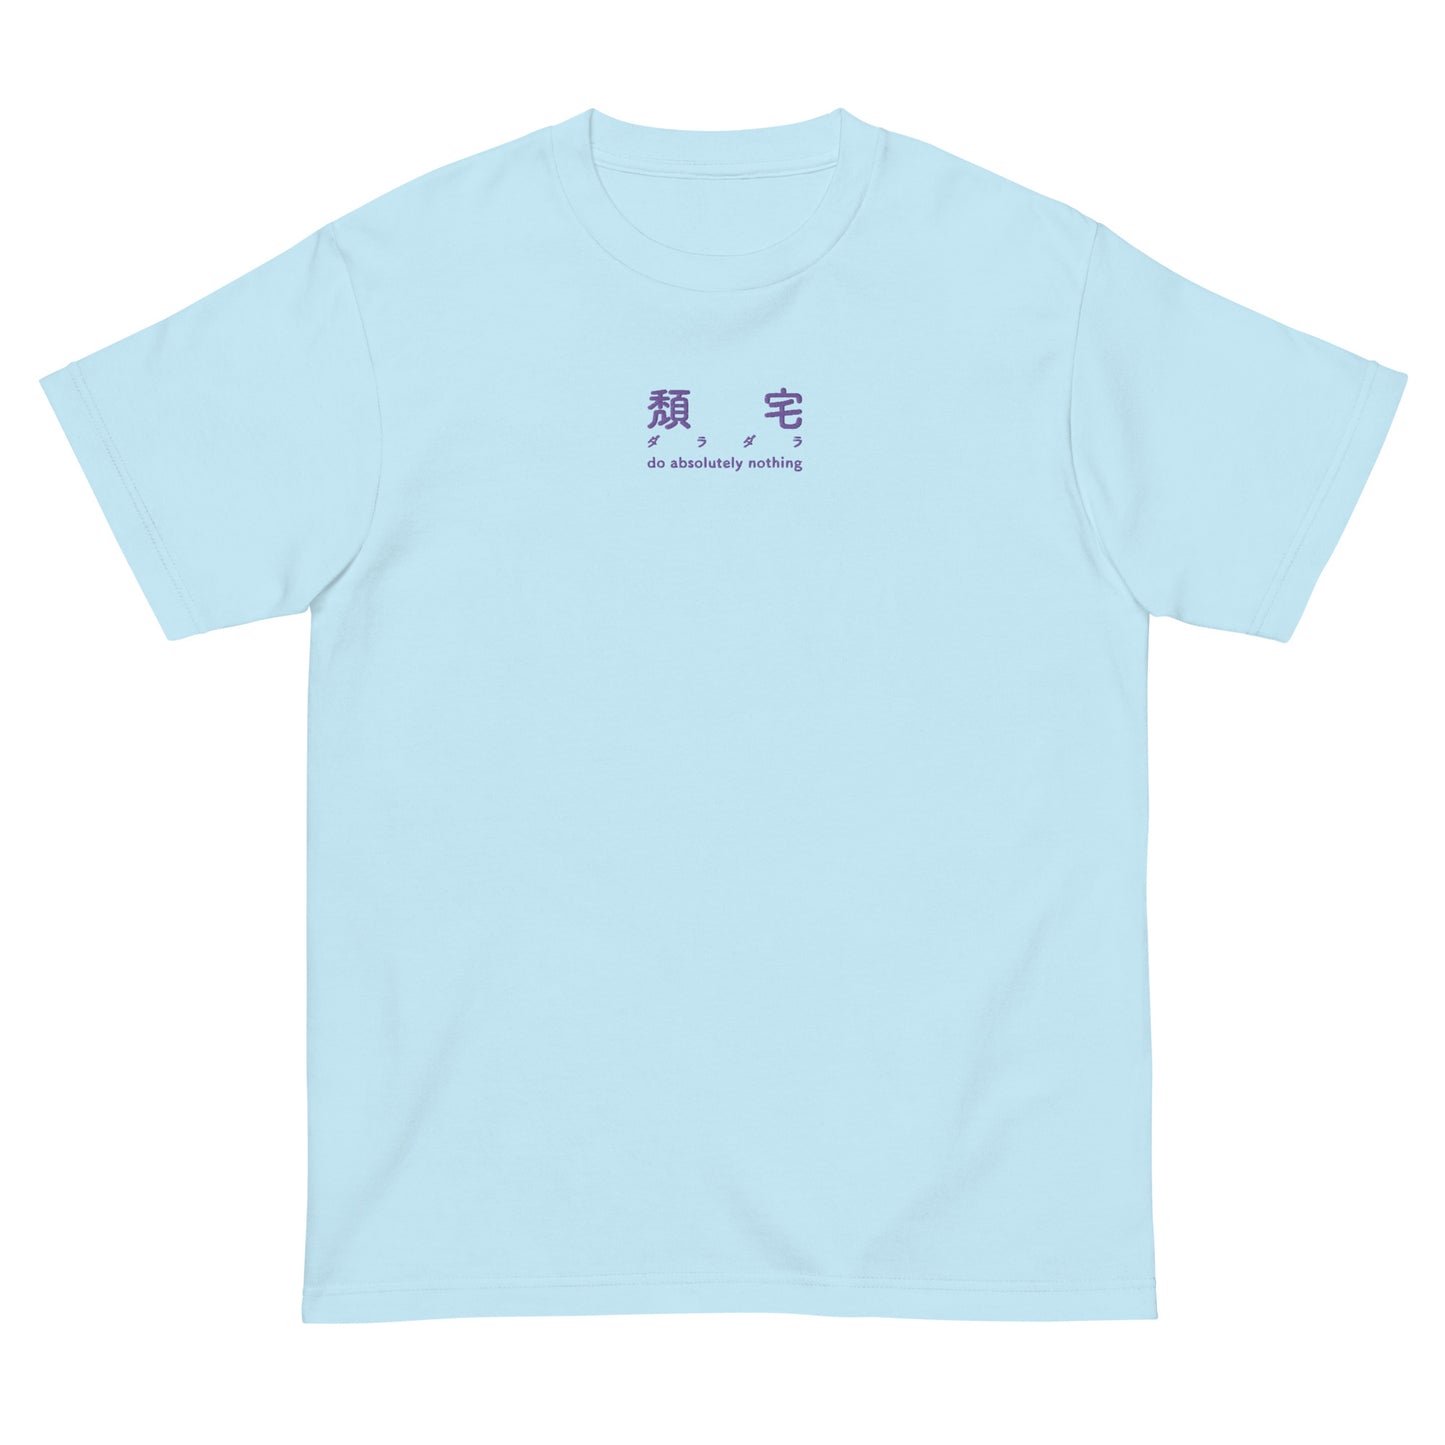 ダラダラ- 刺繍 ユニセックス Tシャツ 綿 100% - UNIWARI